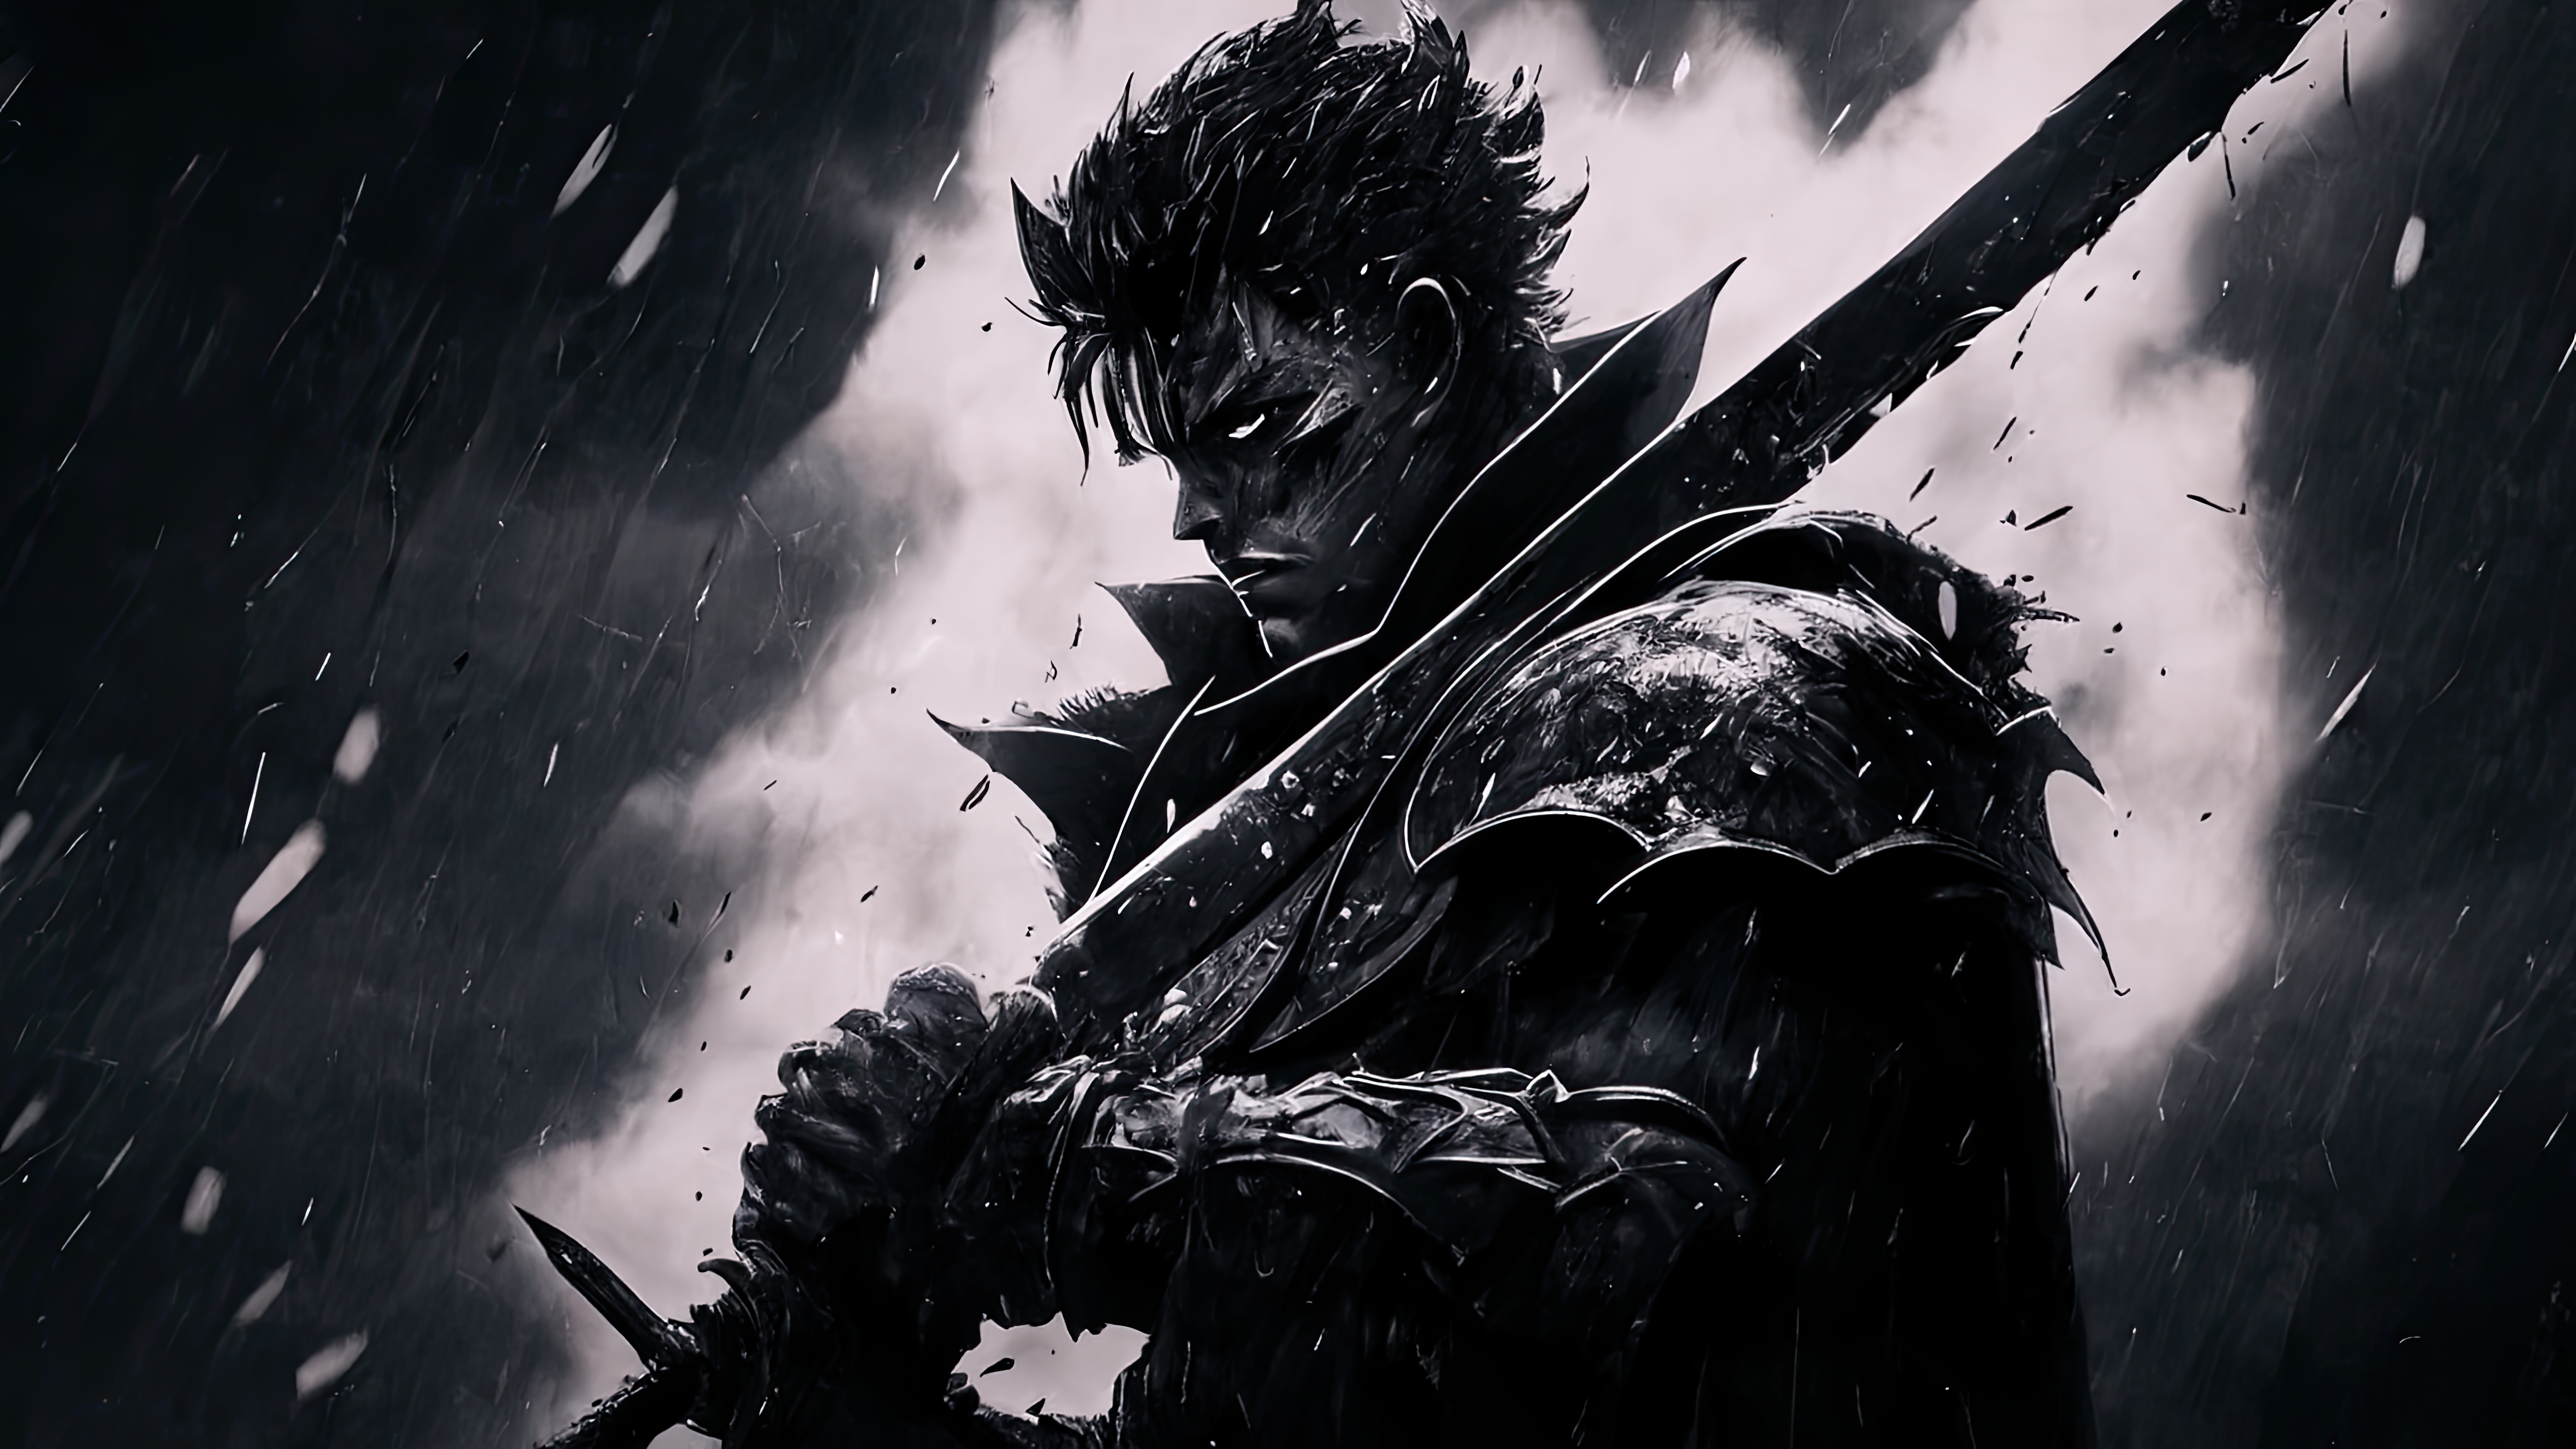 Guts Berserk Berserk Armor Anime Men Rain Looking At Viewer Armor Sword 8192x4608